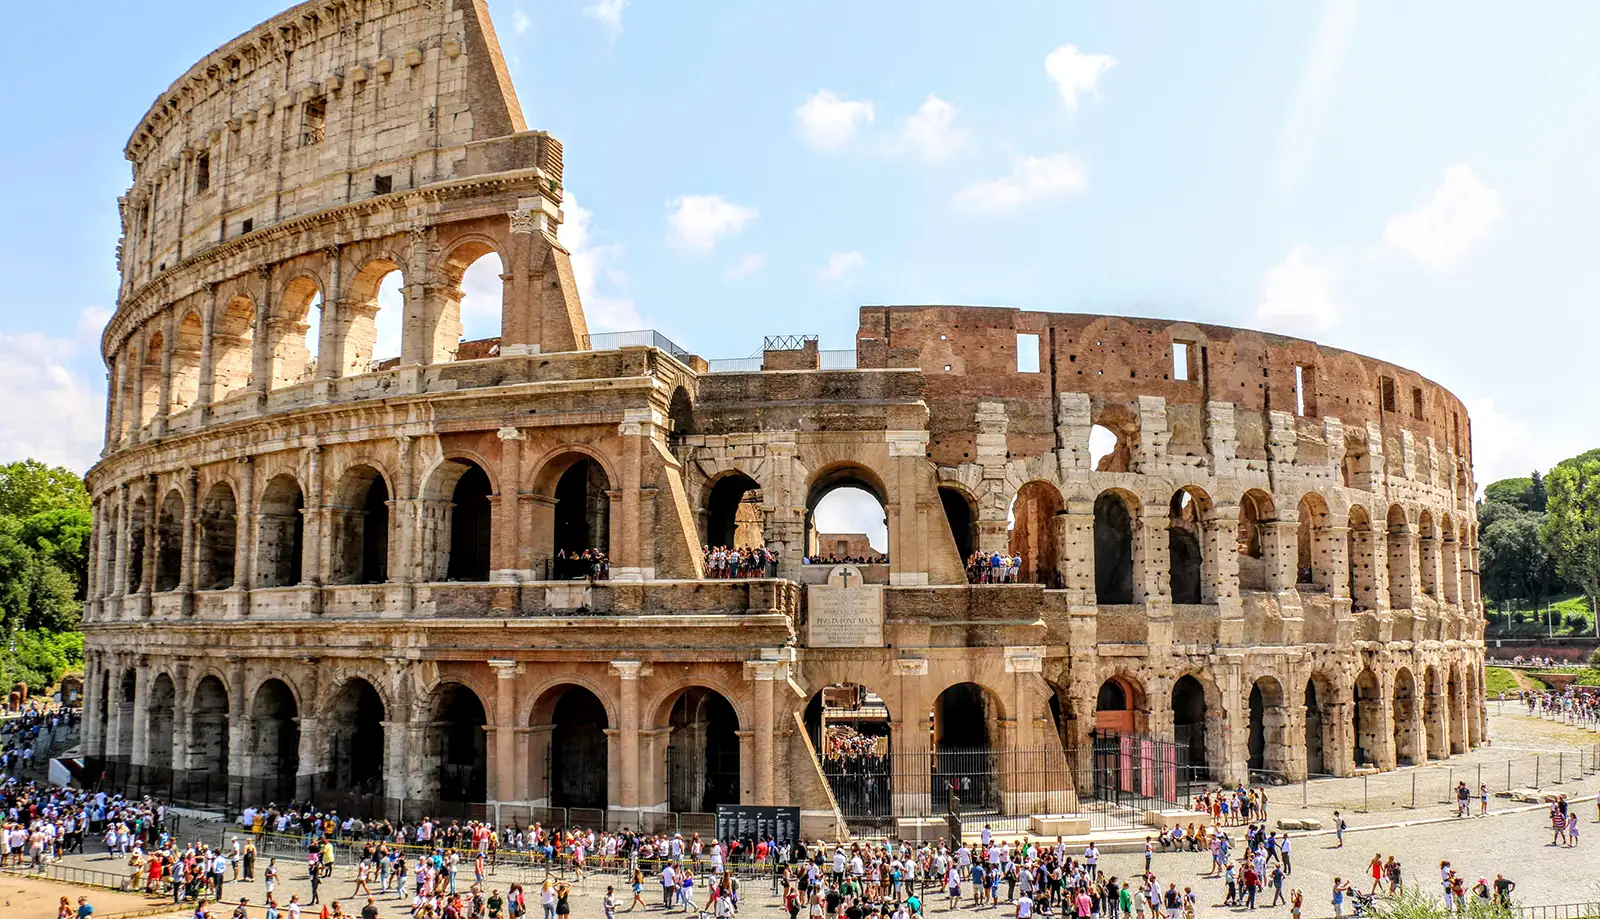 Đấu trường Colosseum đại diện cho sự quyền lực của Đế chế La Mã